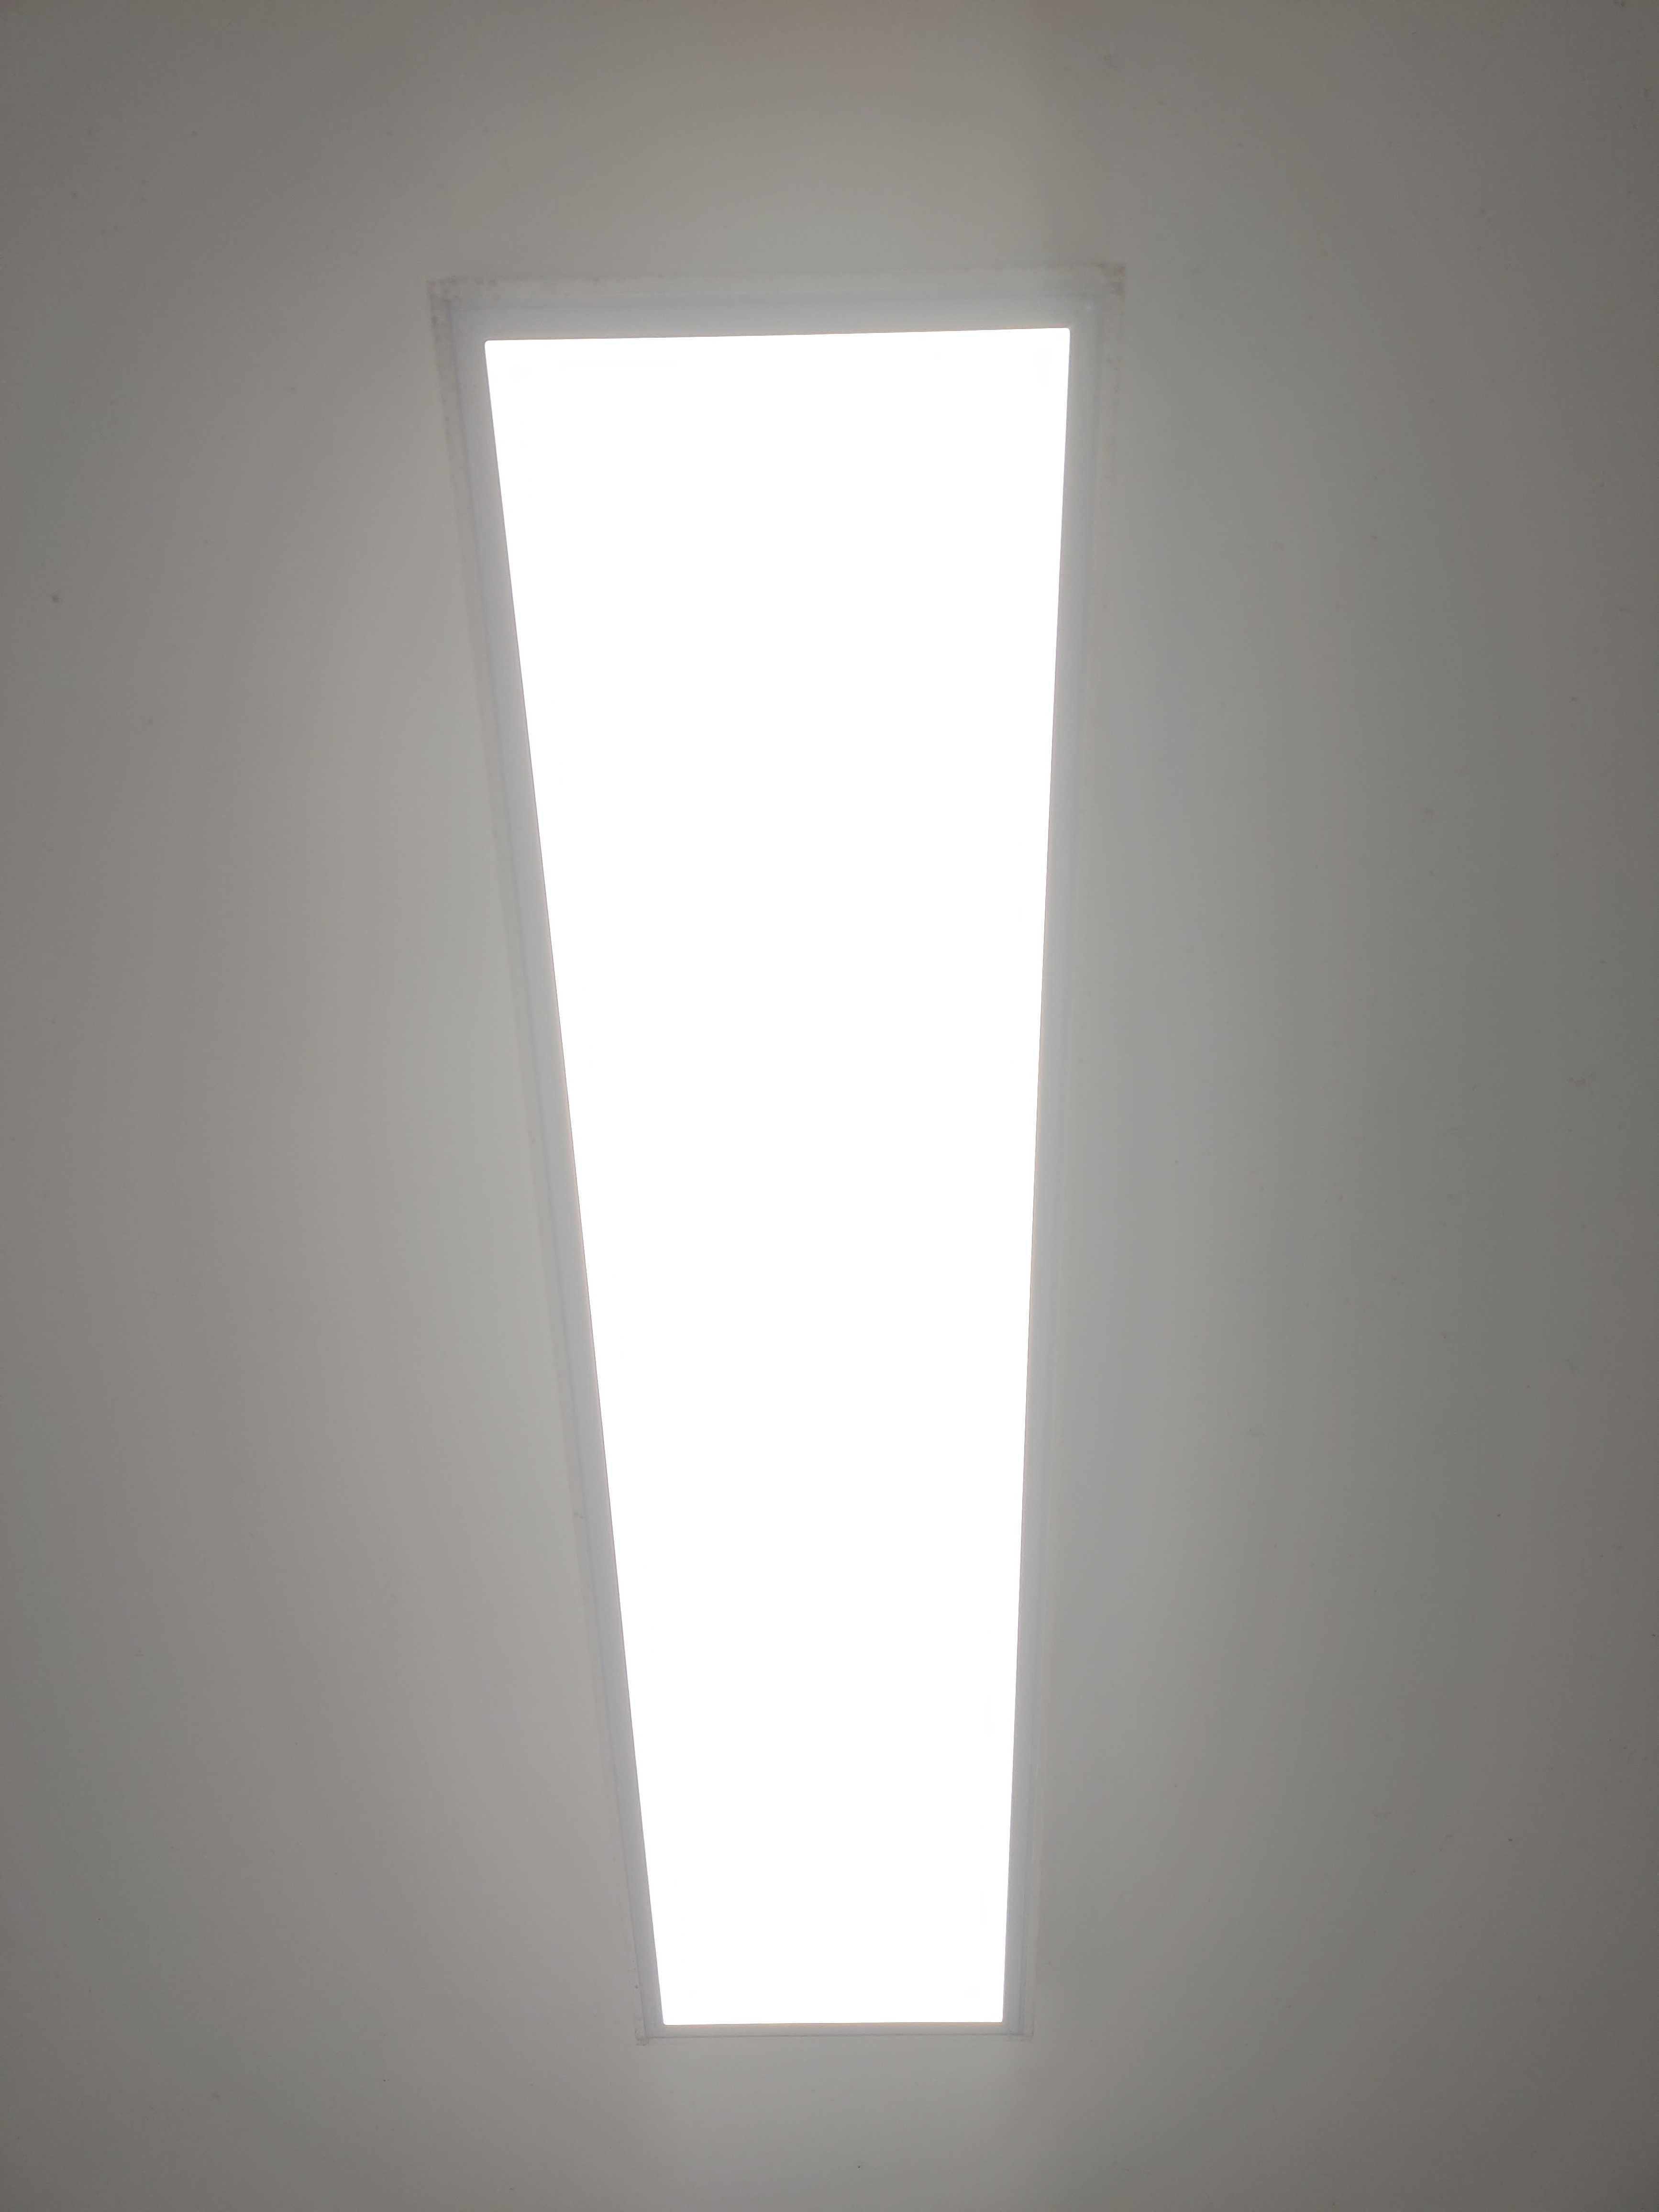 Luz de Teto Painel LED 120x30cm 48W 4400LM